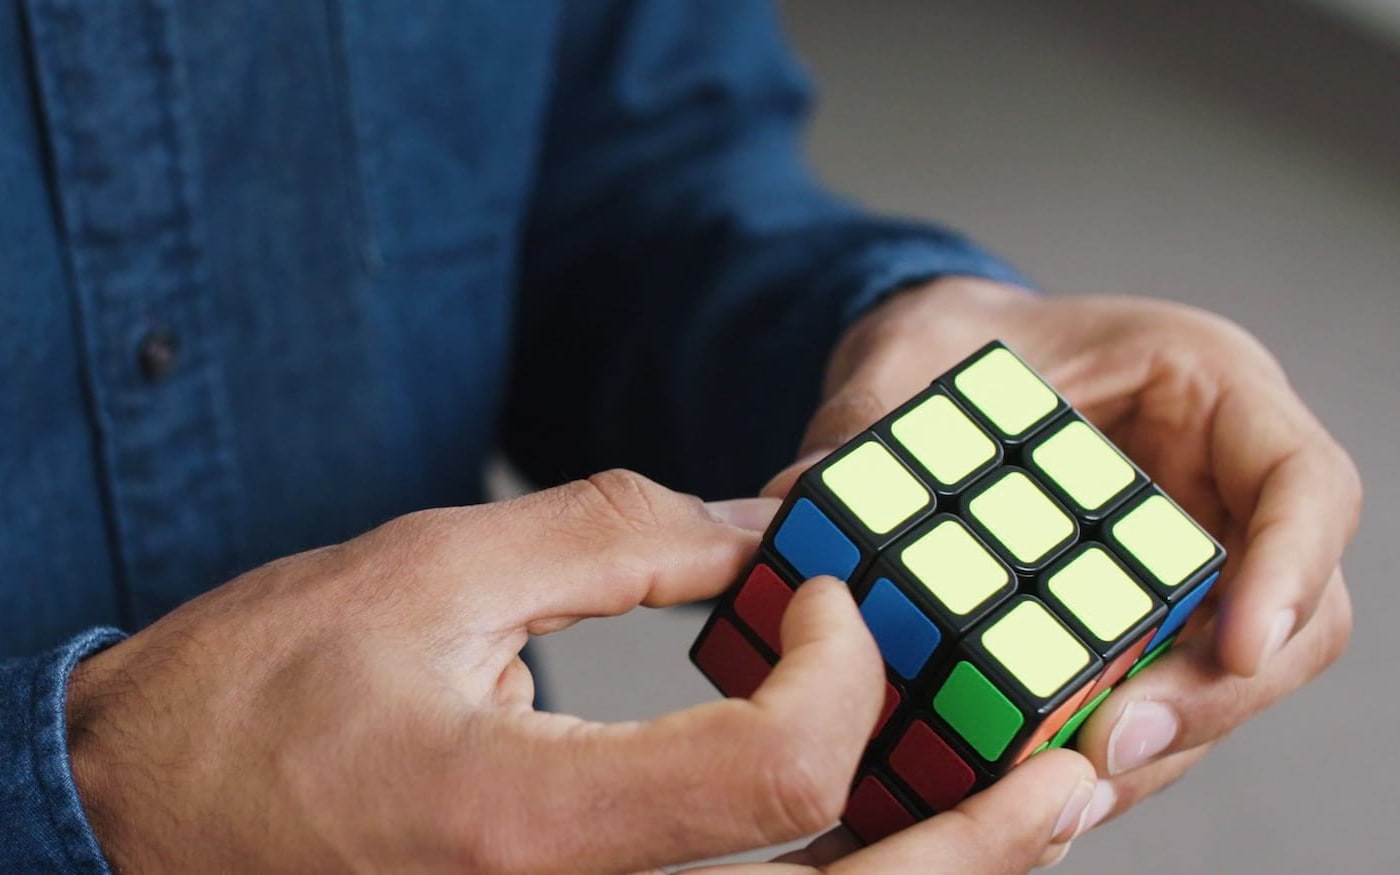 Inteligência artificial aprende sozinho a resolver cubo mágico